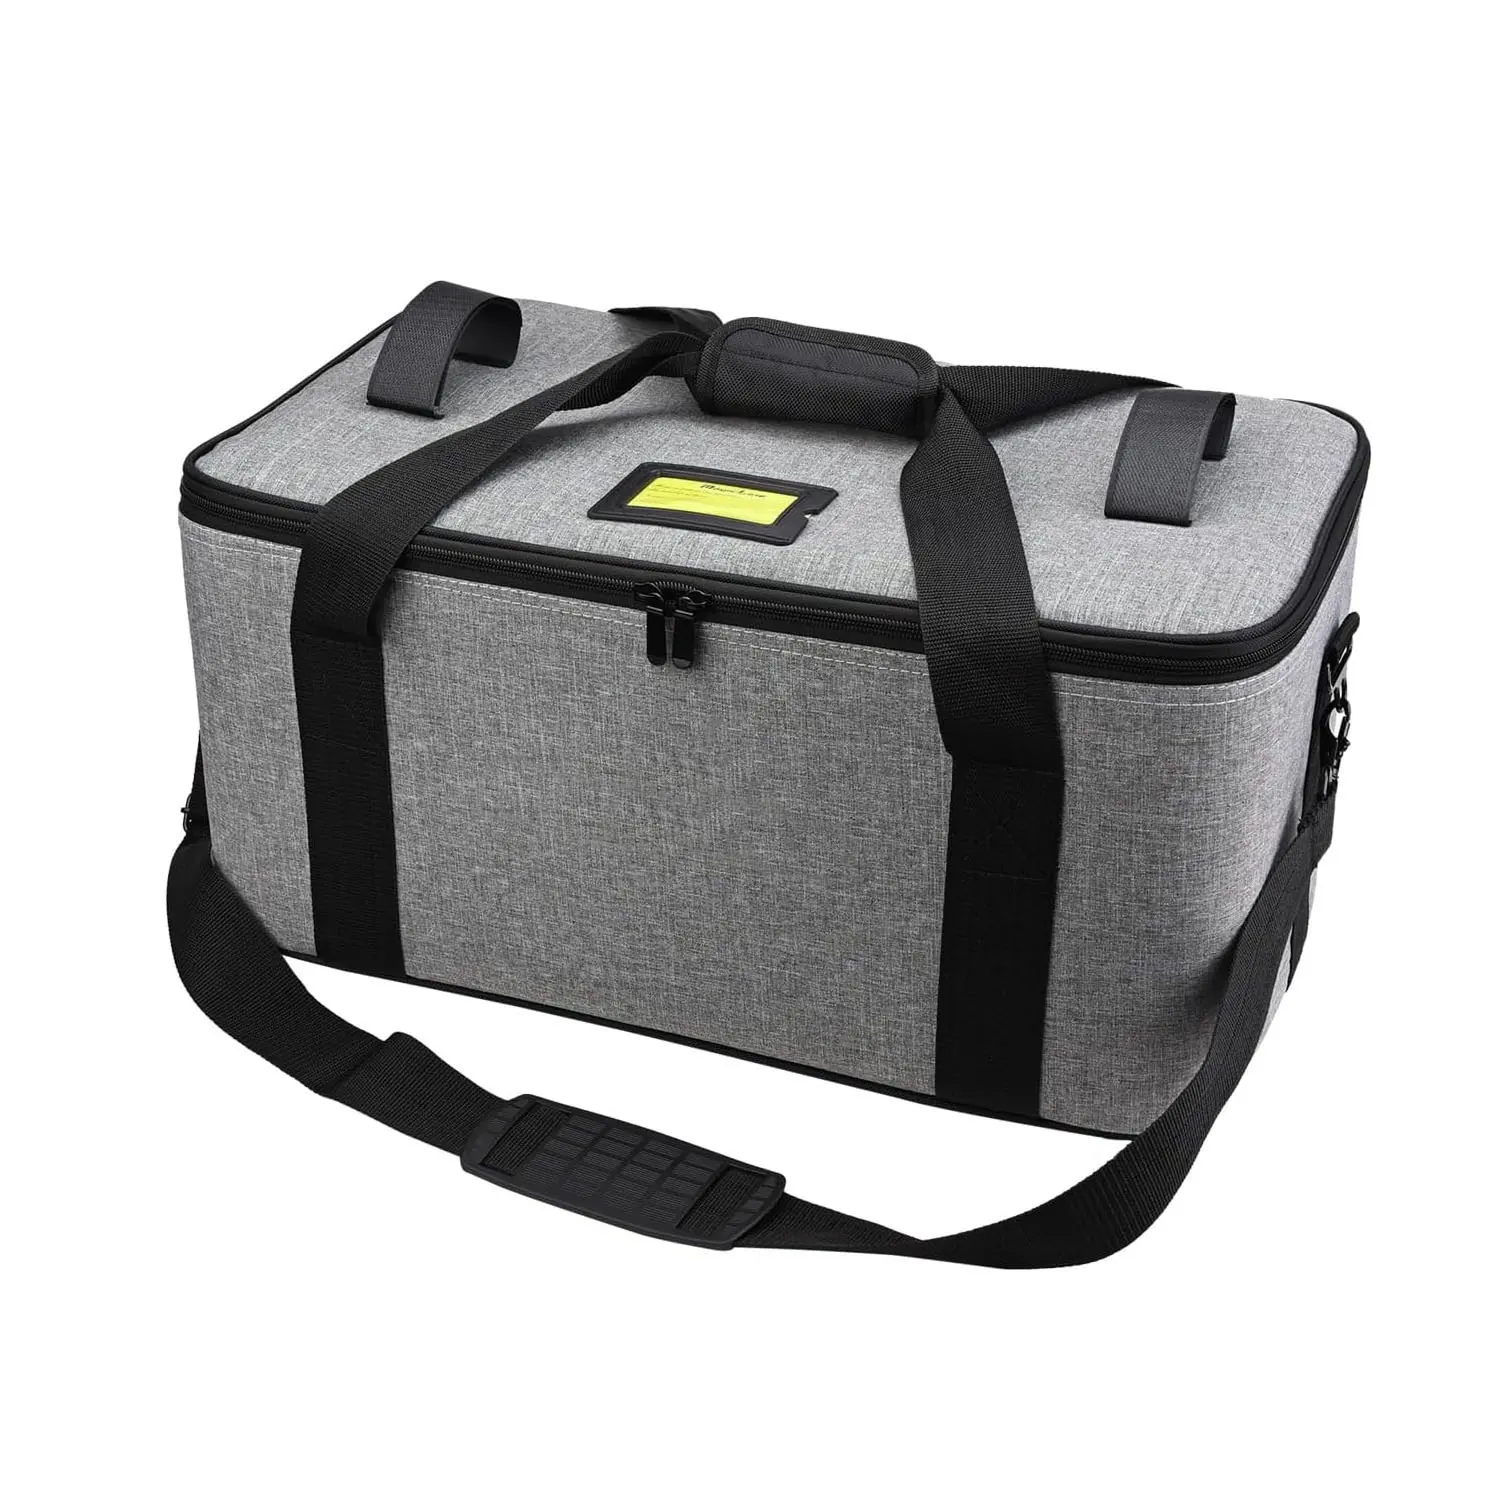 Hình ảnh Studio máy ảnh ánh sáng mang theo túi với bọt chống sốc khoang cứng nhắc Mang trường hợp cho ổn định LED ánh sáng bay không người lái